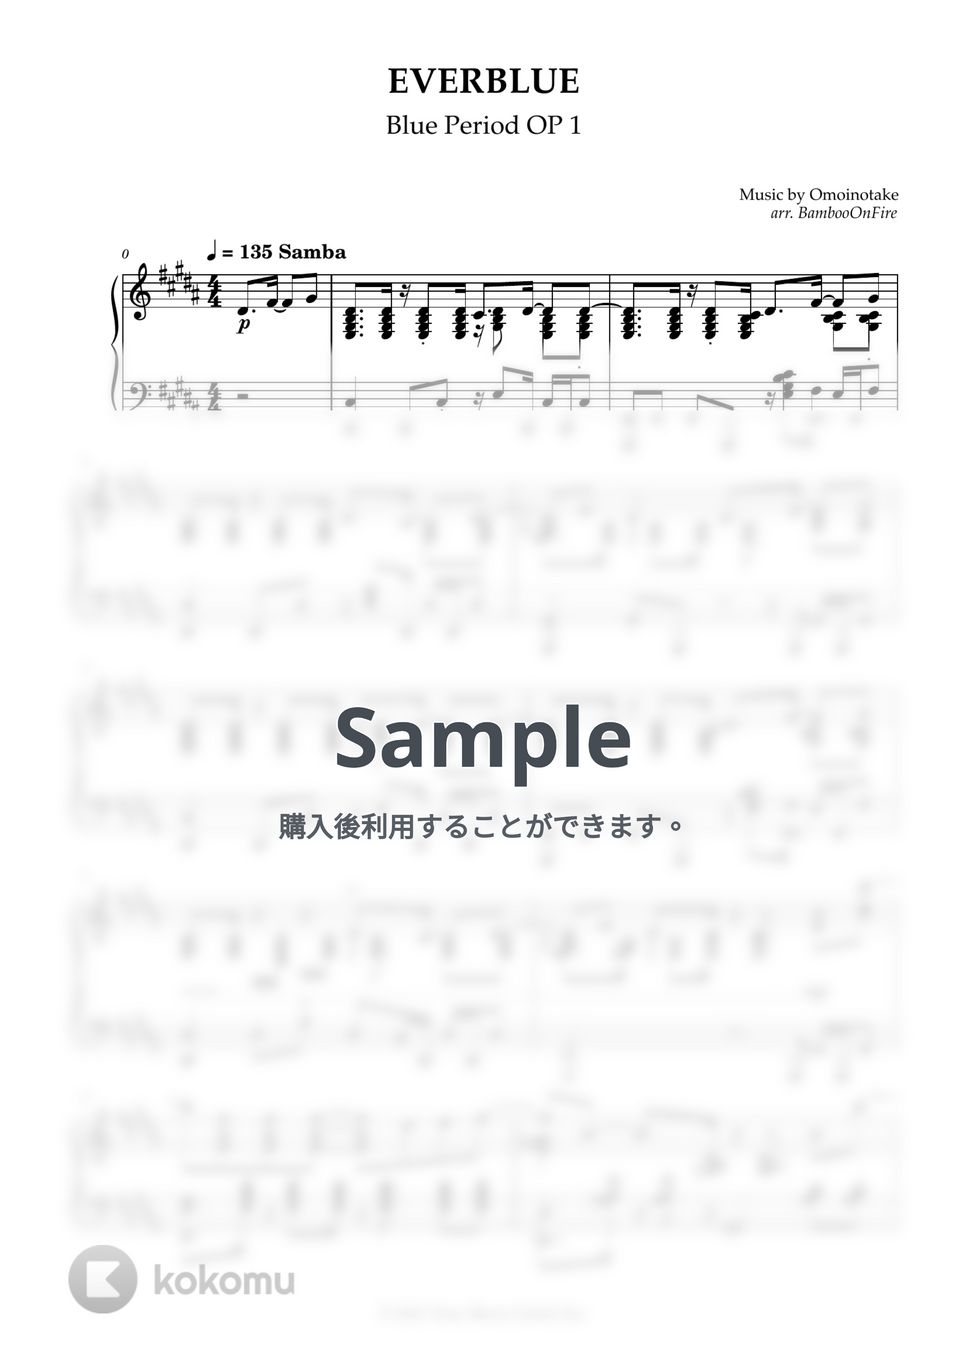 ブルウ ピリオド - EVERBLUE (Omoinotake) by BambooOnFire's Music Lab